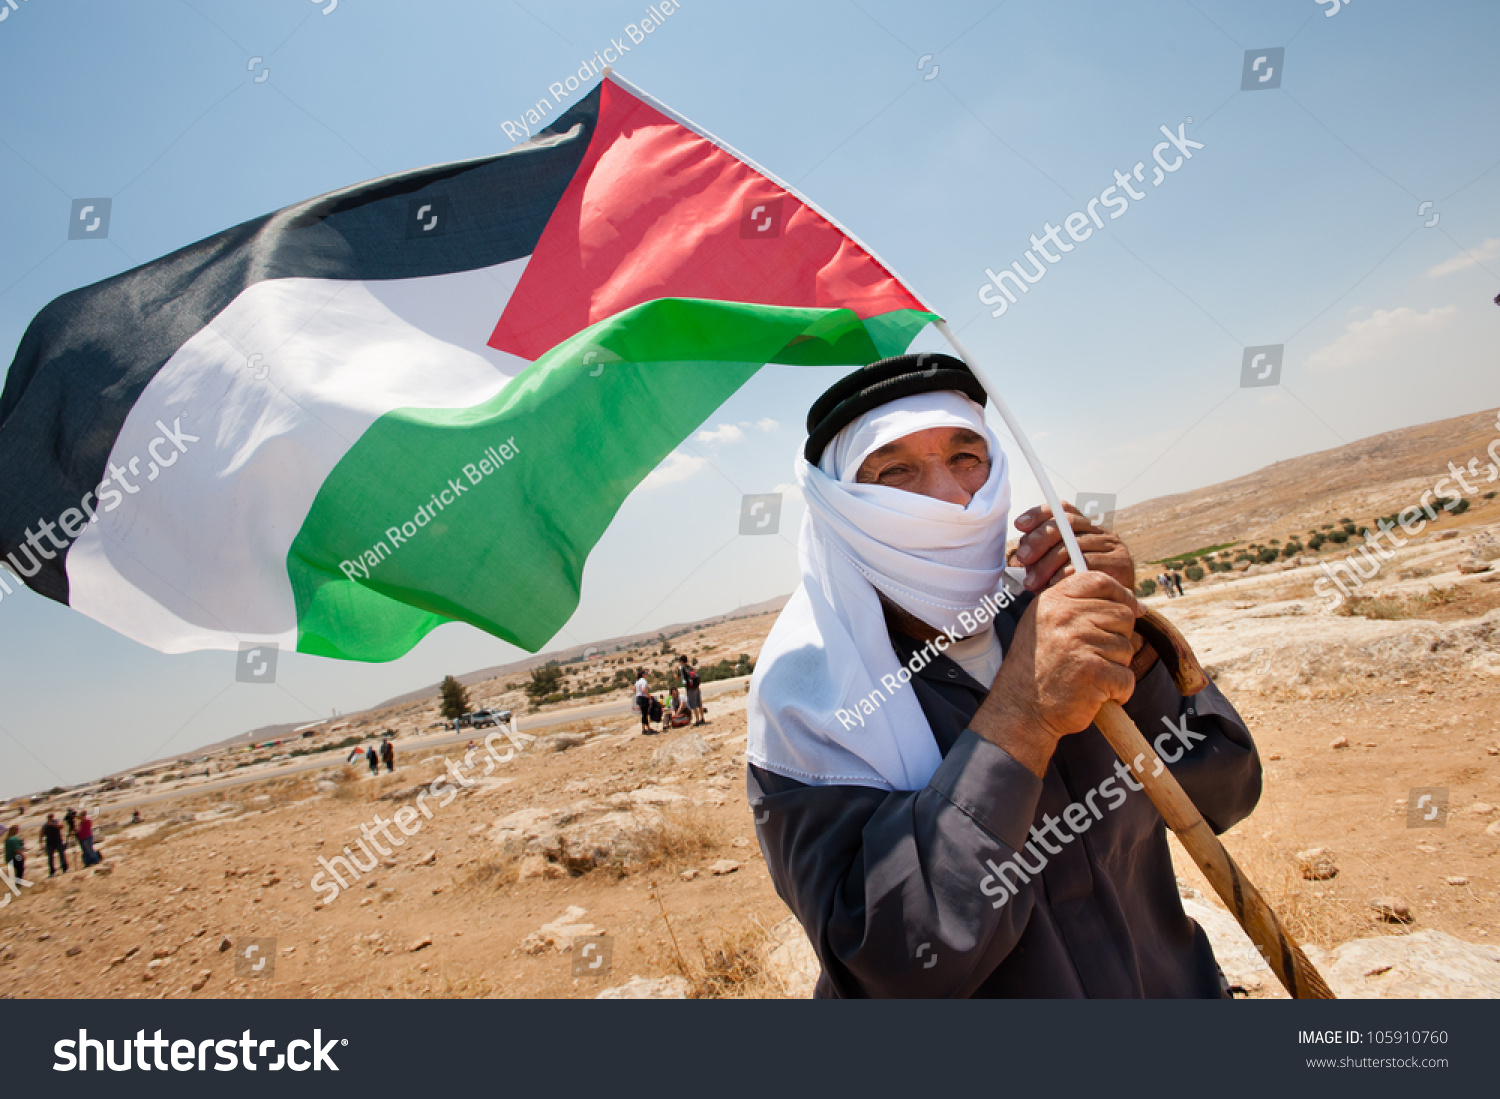 Есть страна палестина. Алжир и Палестина. Палестинский флаг с детьми. Флаг Палестины фото. Ребенок с флагом Палестины.